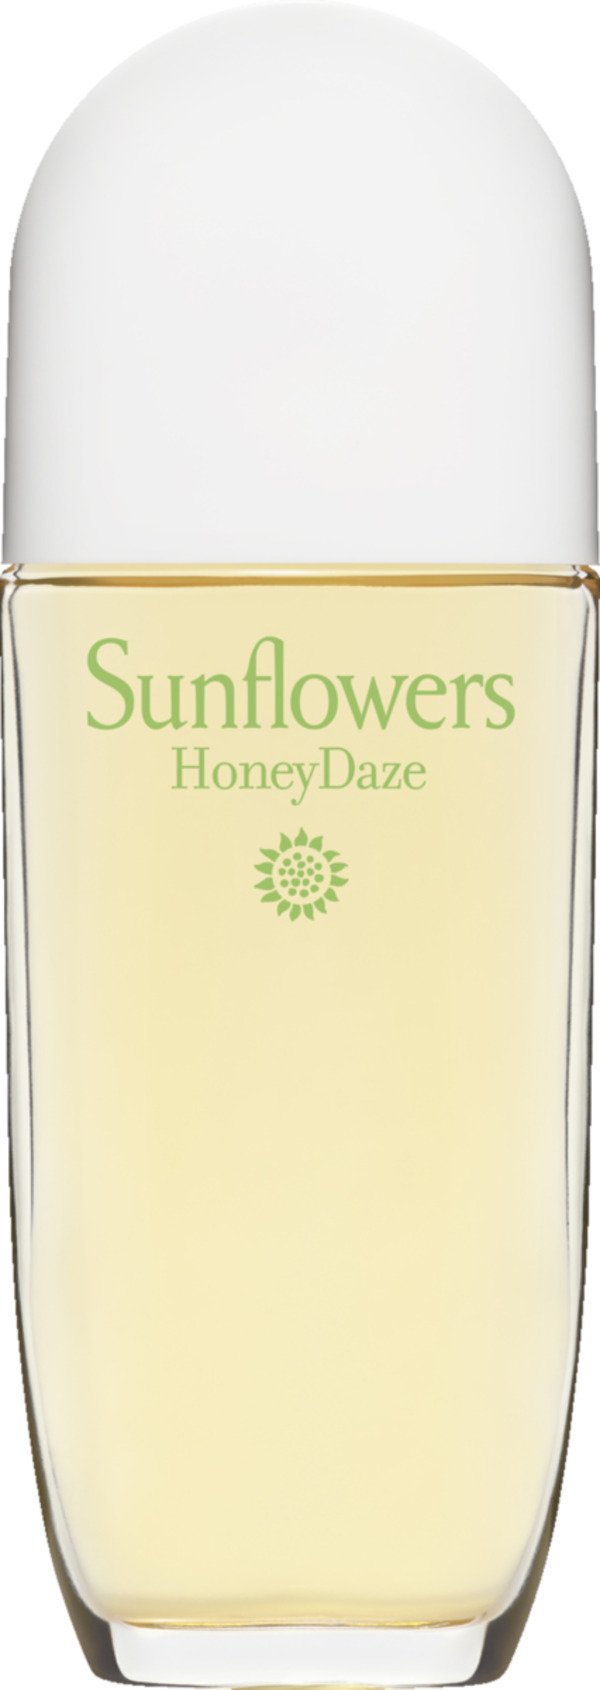 Bild 1 von Elizabeth Arden Sunflowers HoneyDaze EdT100ml